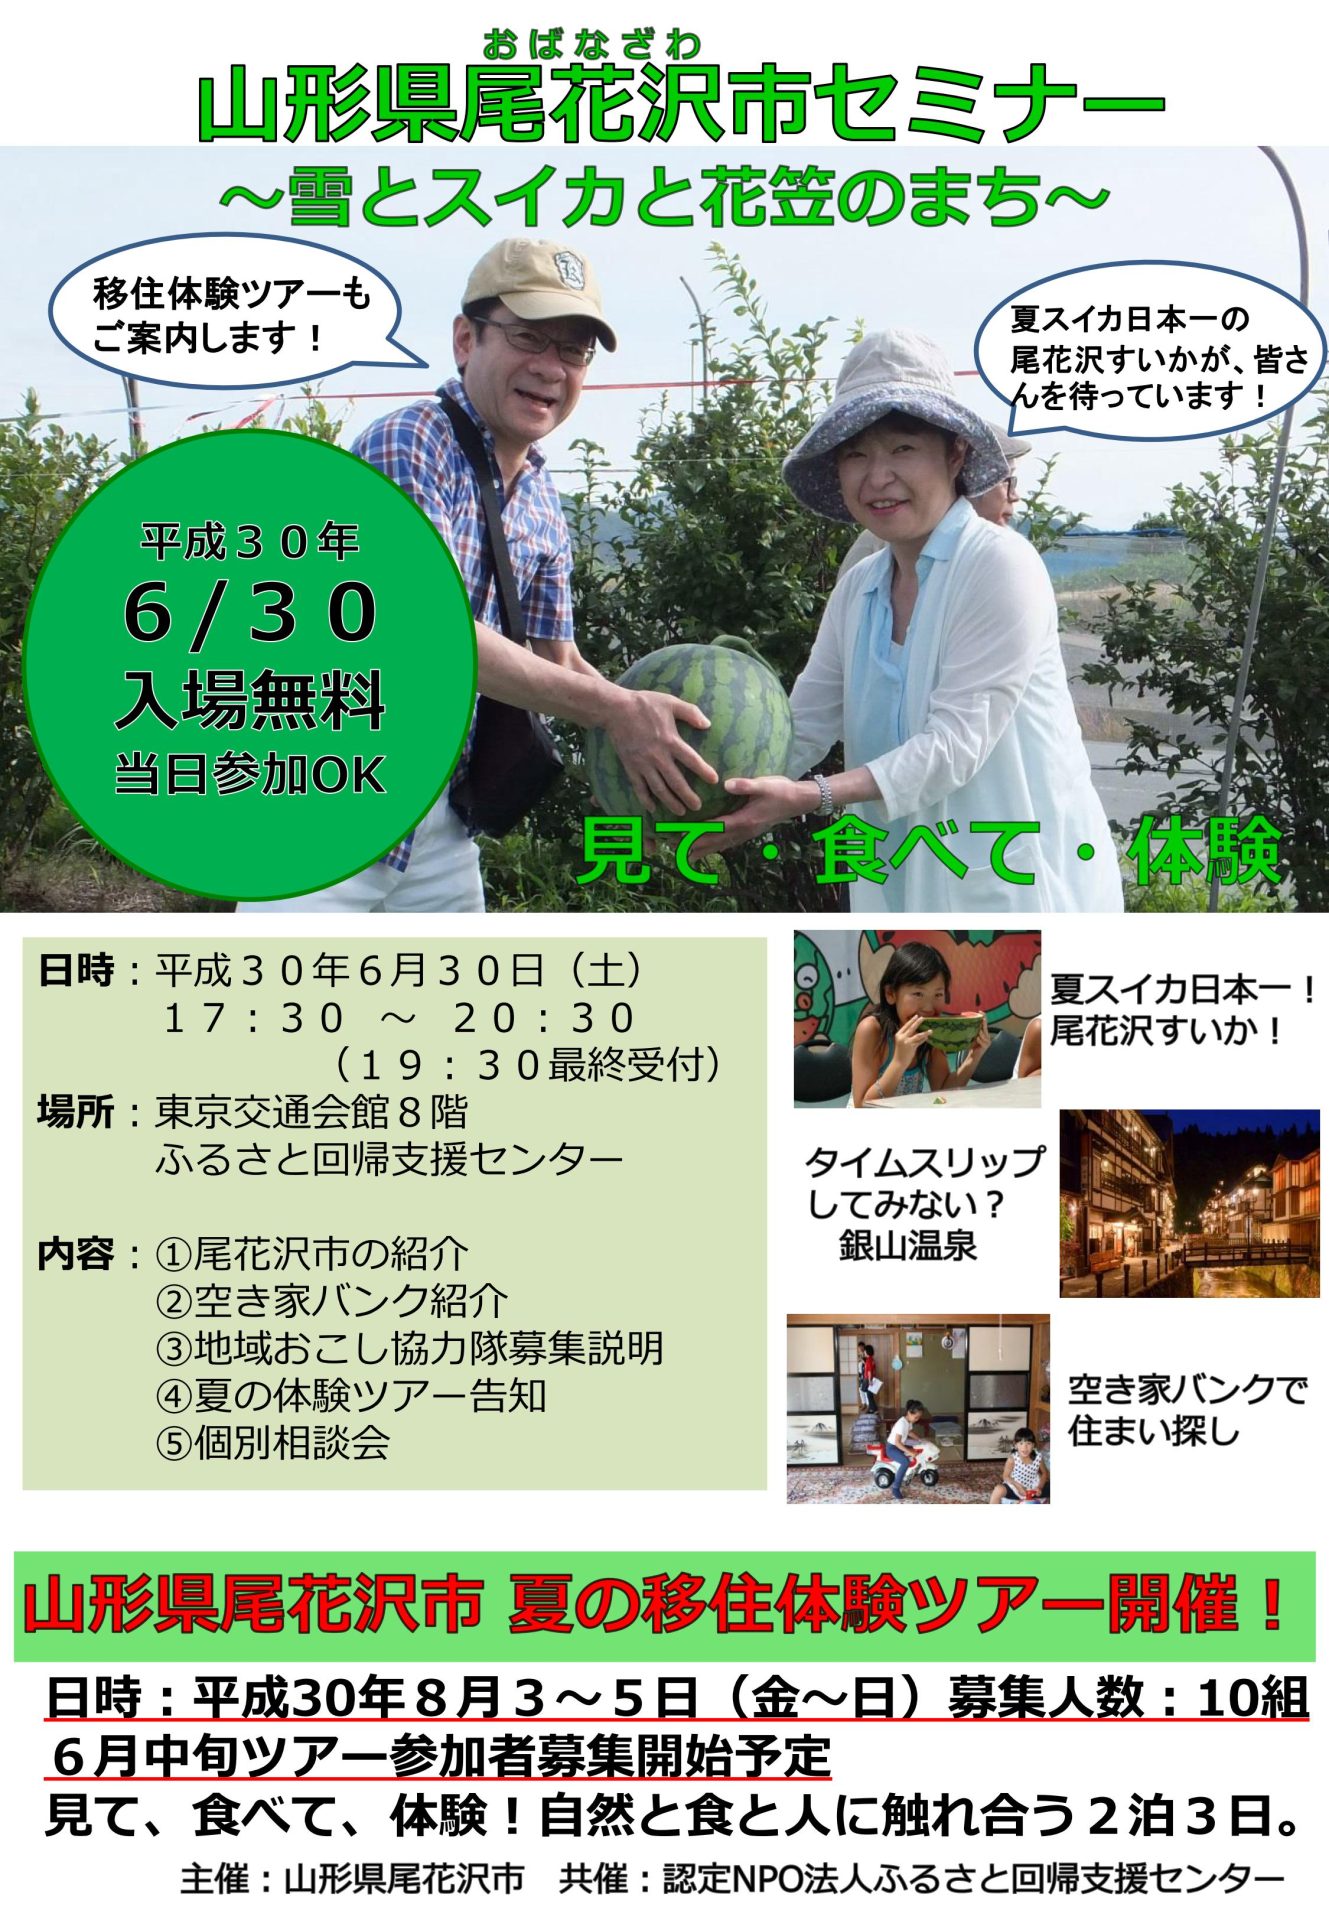 尾花沢市セミナー | 移住関連イベント情報